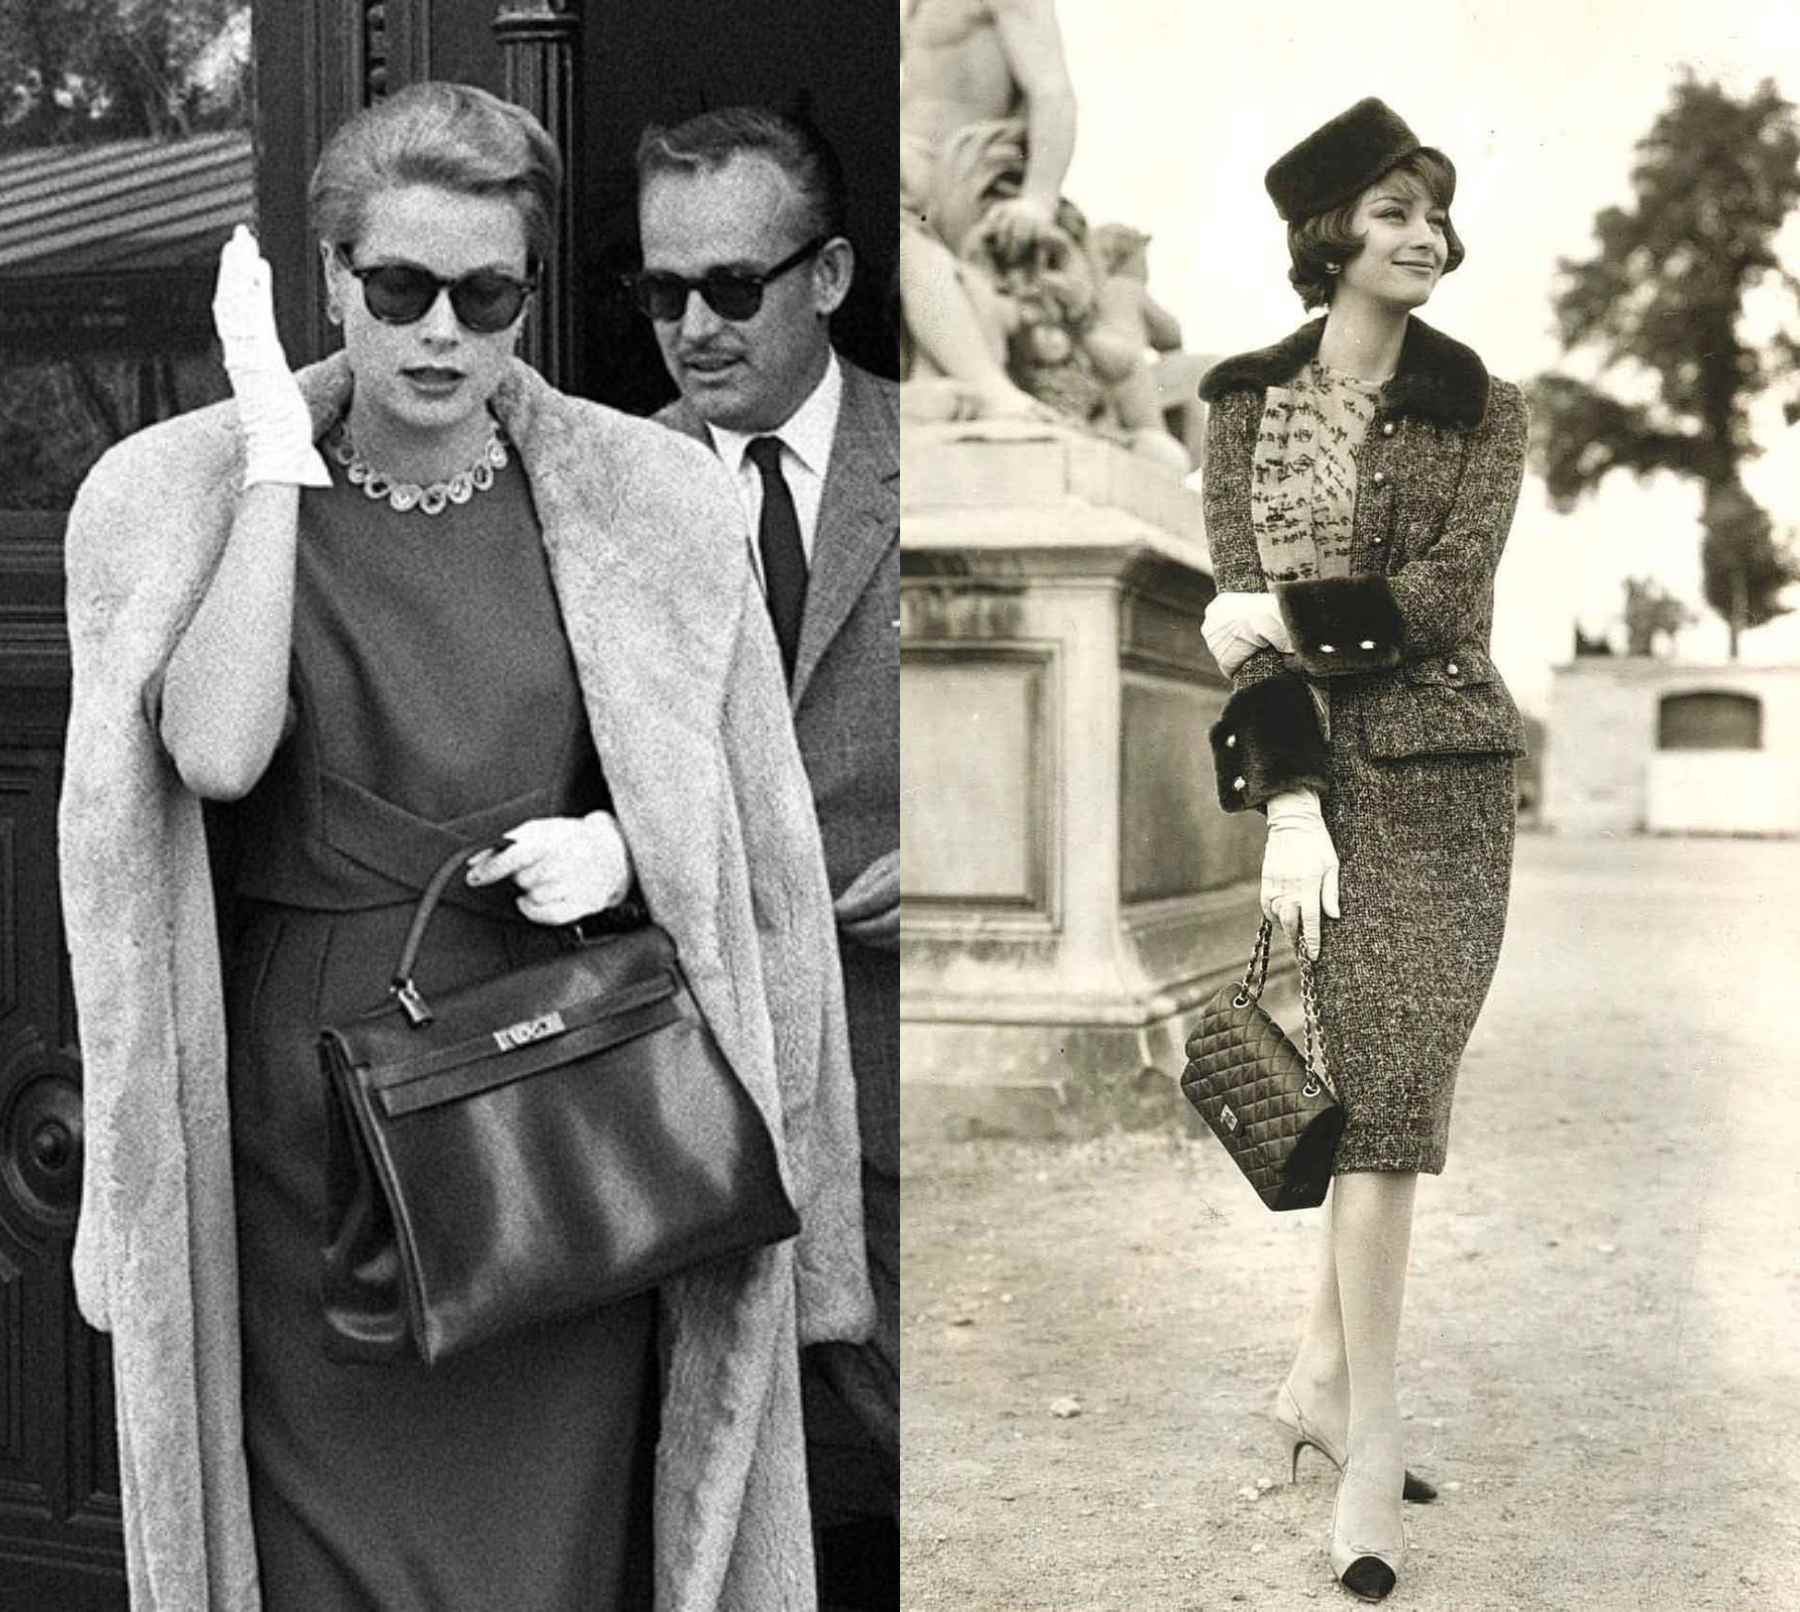 Eleganța și stilul vremurilor apuse - moda anilor ’50 – ‘60. Un capitol vestimentar ce merită amintit și readus la viață